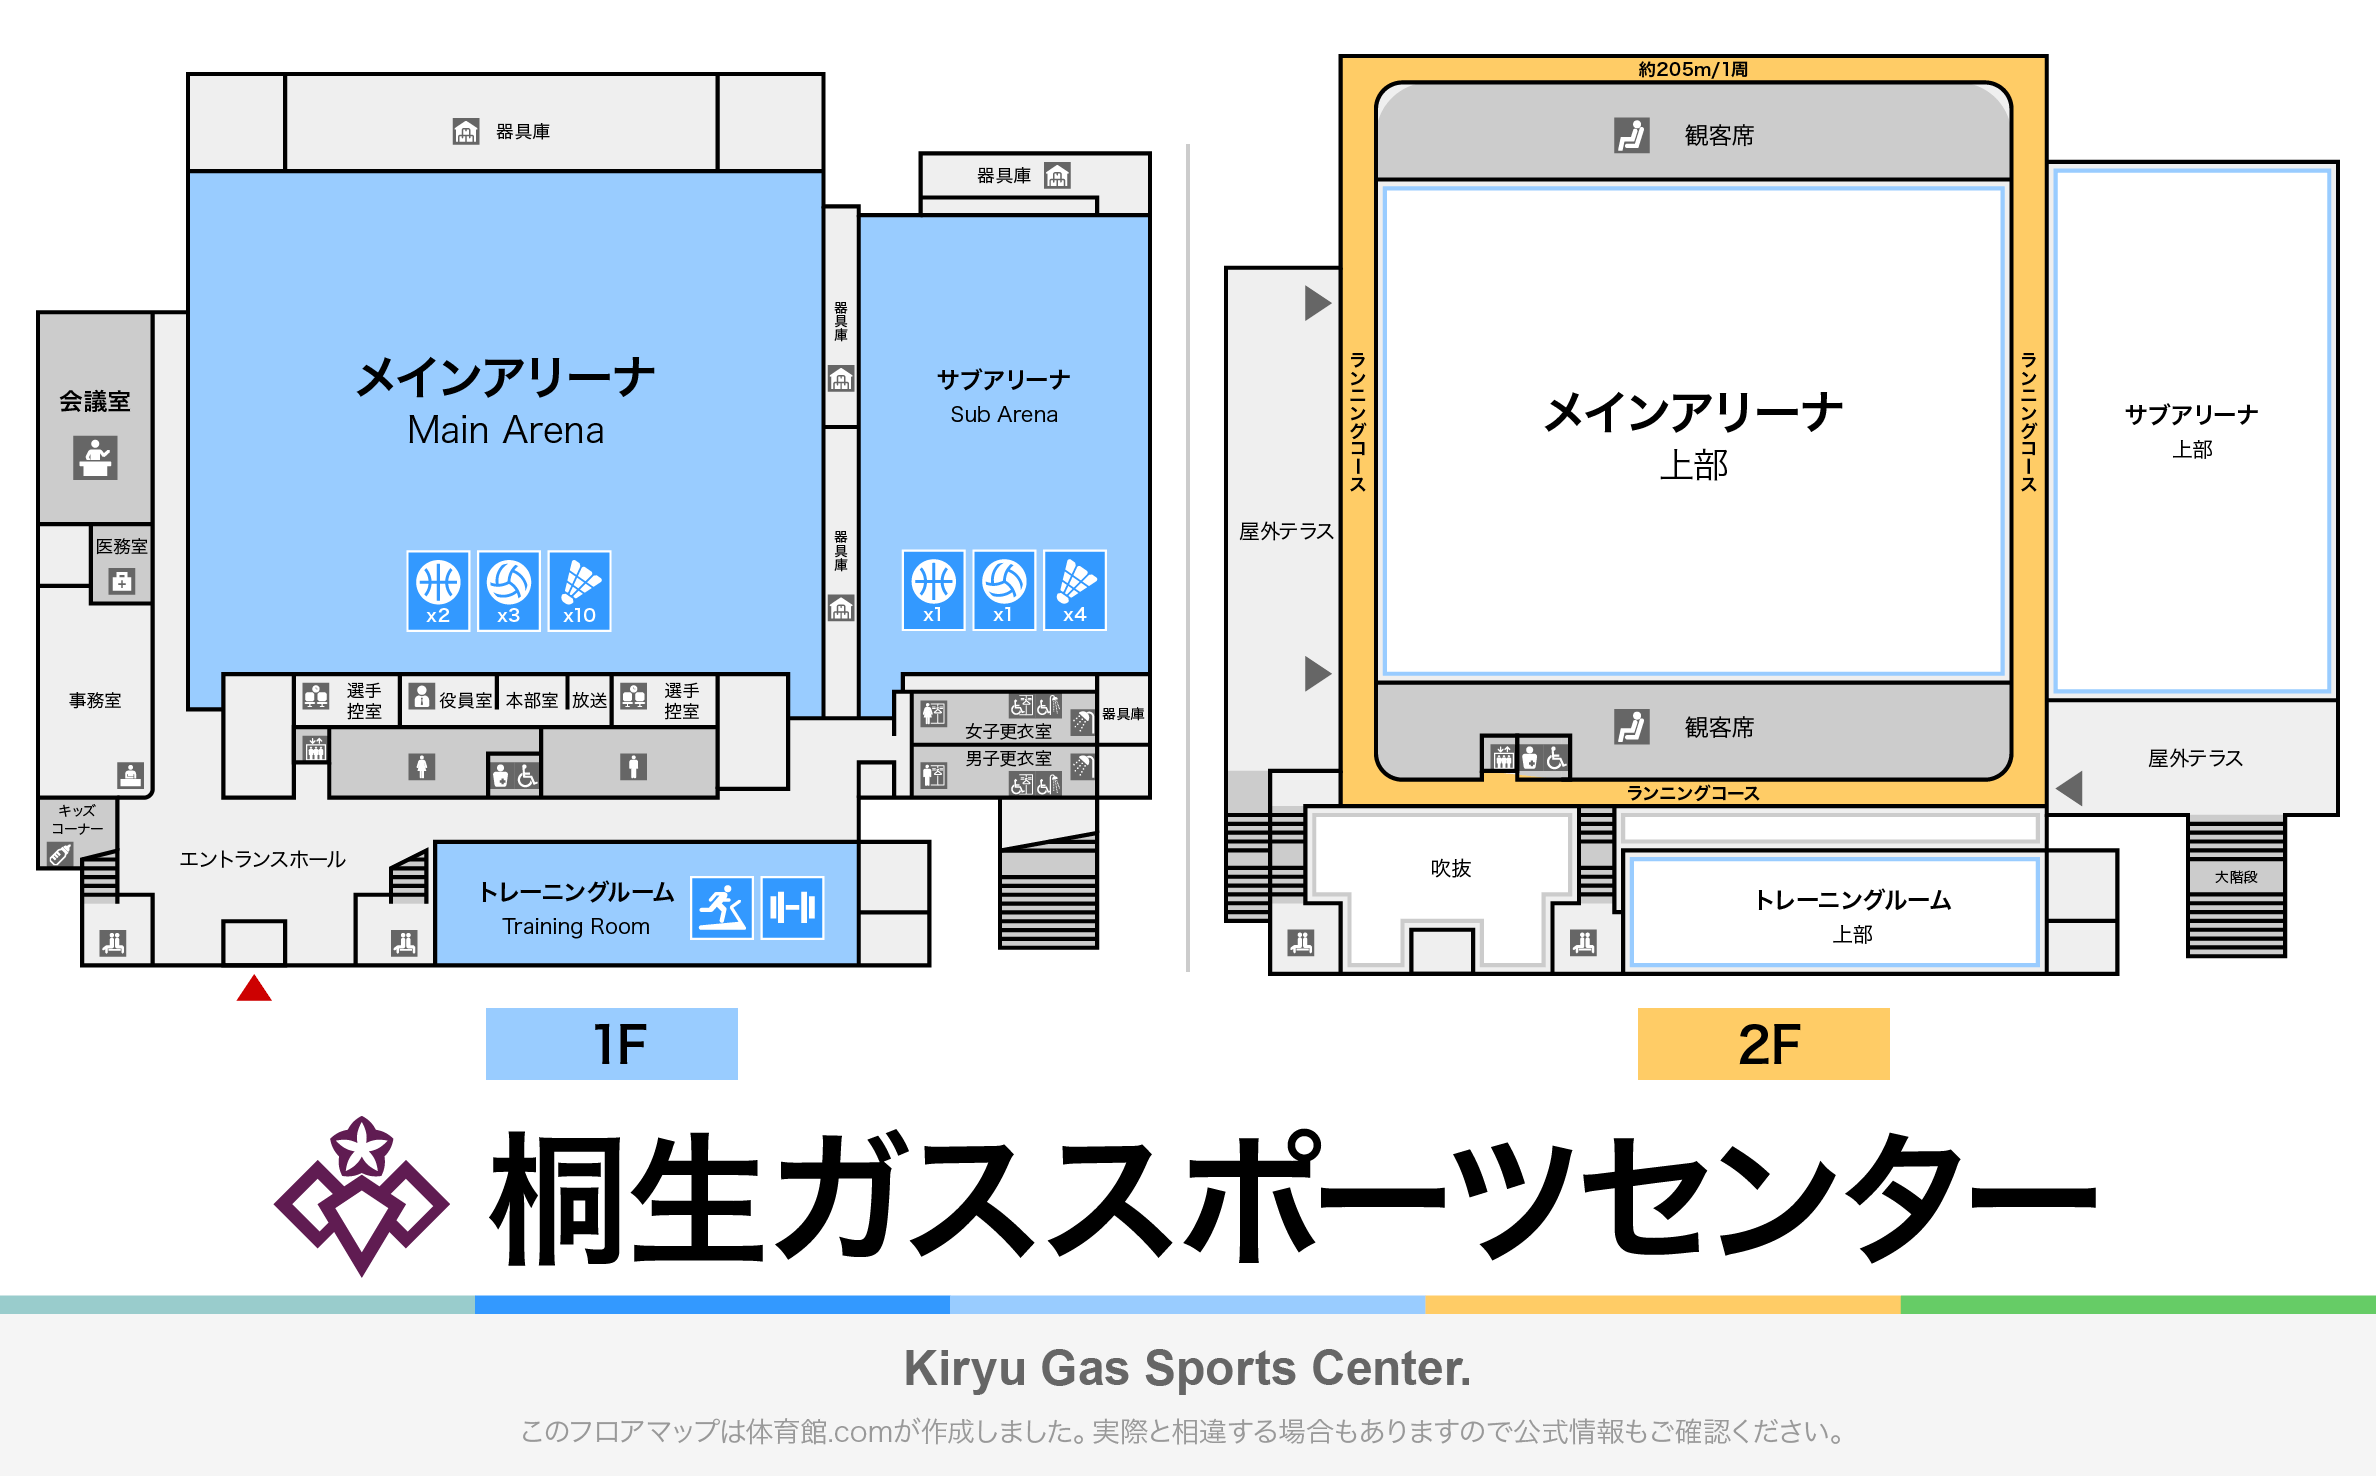 桐生ガススポーツセンターのフロアマップ・体育館